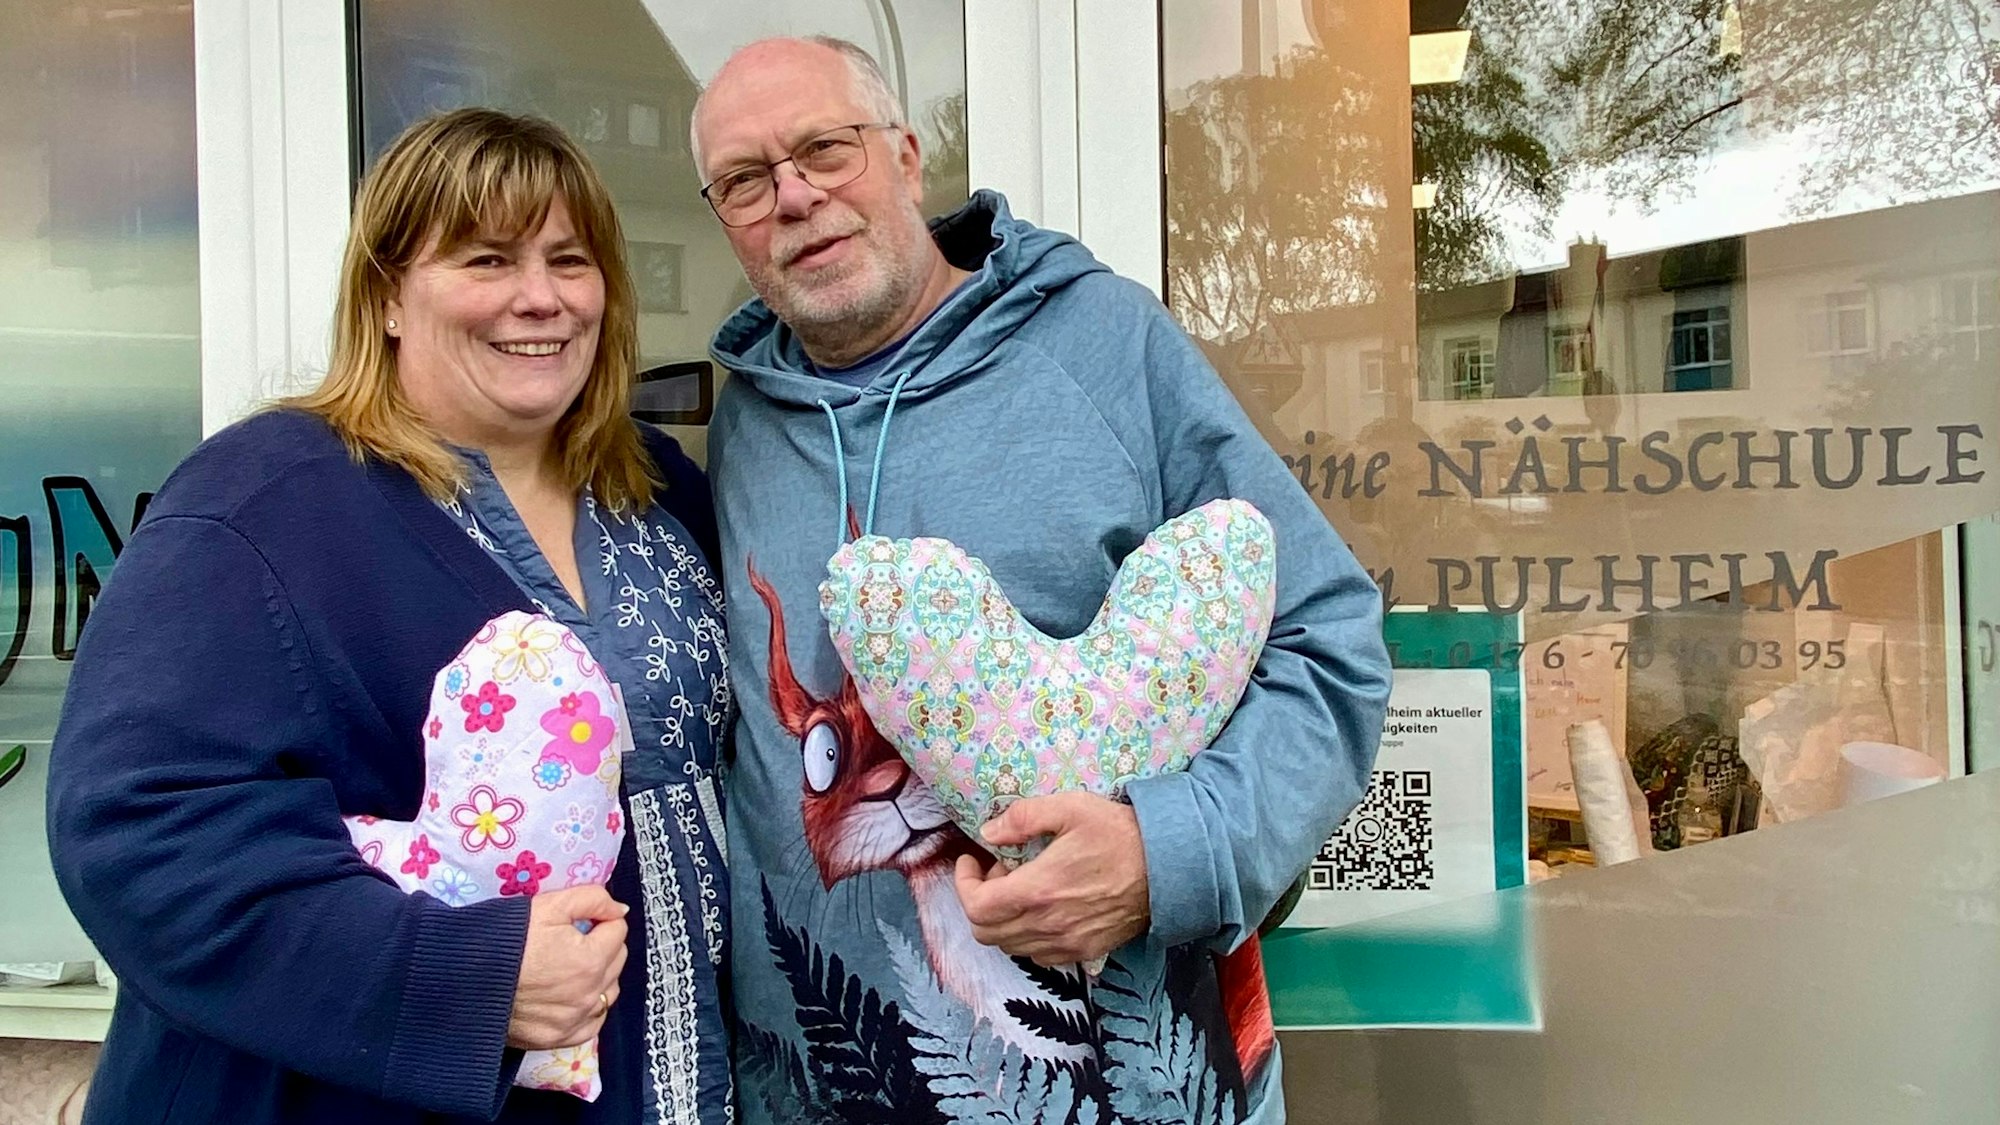 Auf dem Foto sind Heike Baier-Lücke und Thomas Lücke zu sehen. Sie haben den Kölner Herzkissen Verein gegründet, um mit Herzkissen Brustkrebspatientinnen zu unterstützen. Sie halten Herzkissen in der Hand.